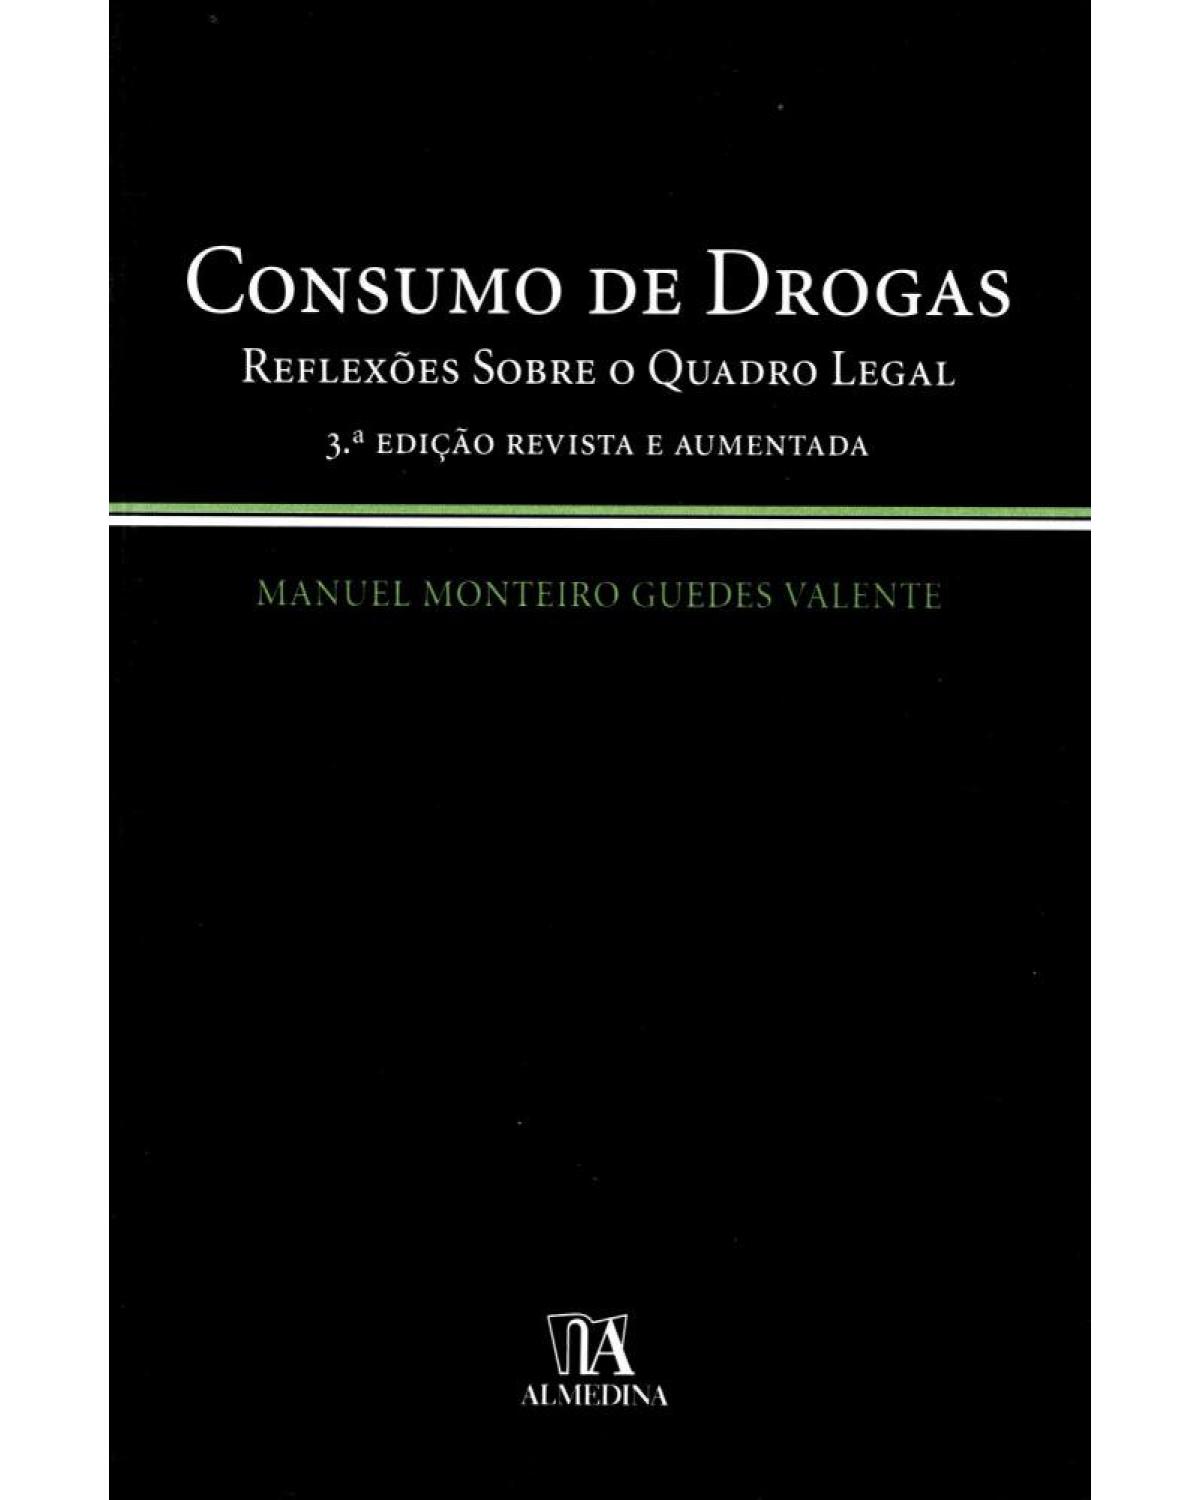 Consumo de drogas - reflexões sobre o quadro legal - 3ª Edição | 2006